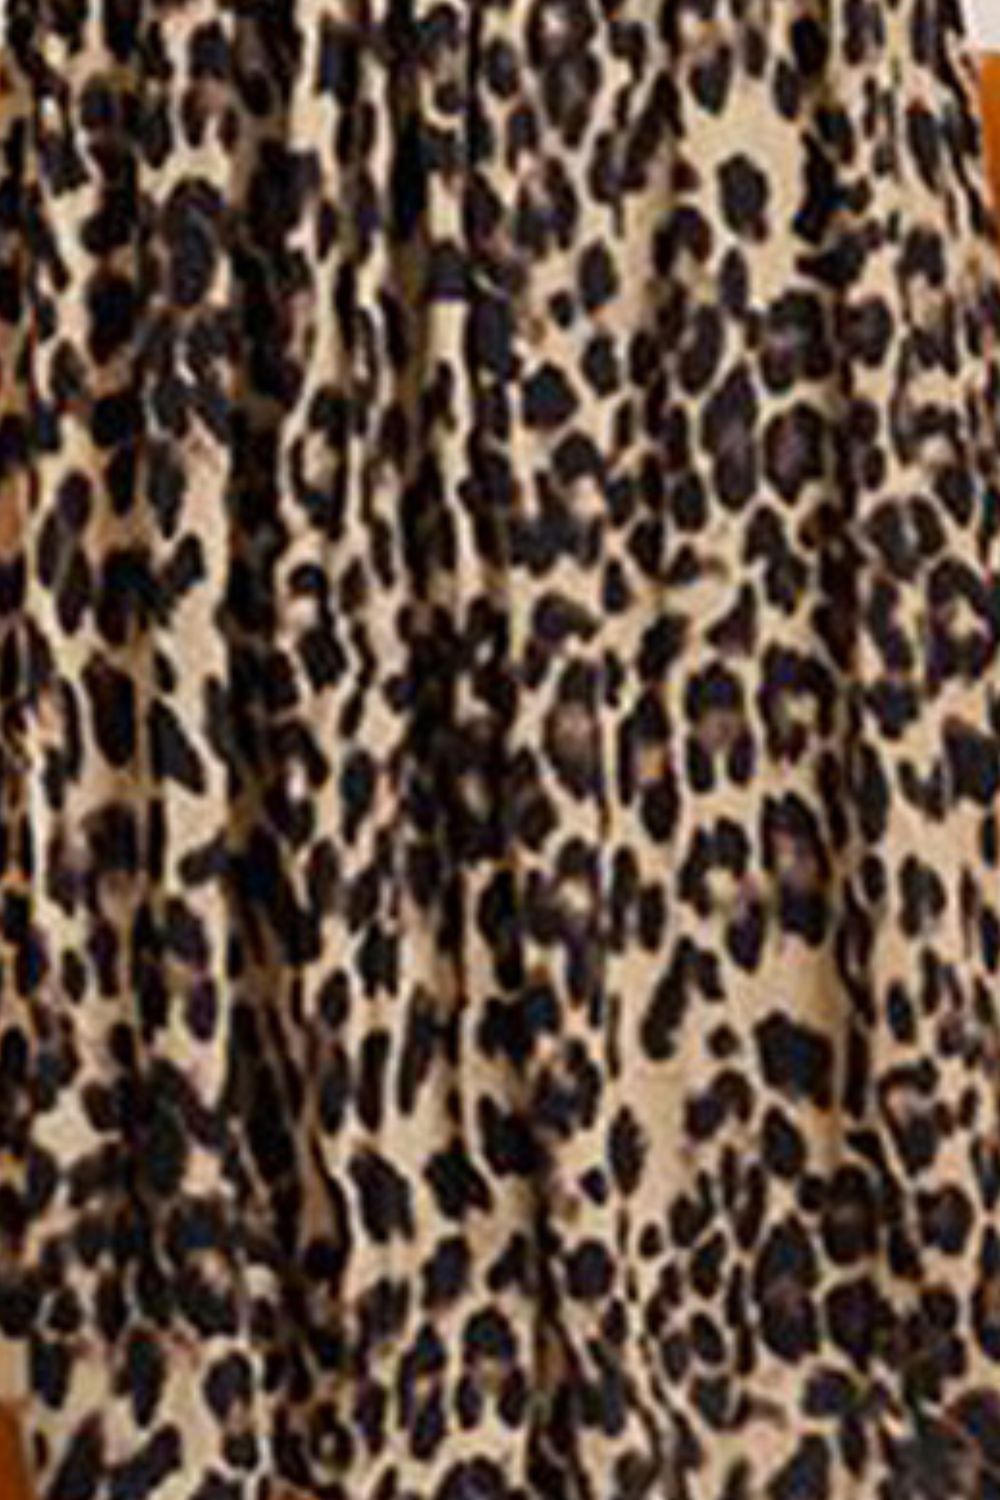 Elegant Chic Leopard Midi Skirt (L - 5X)